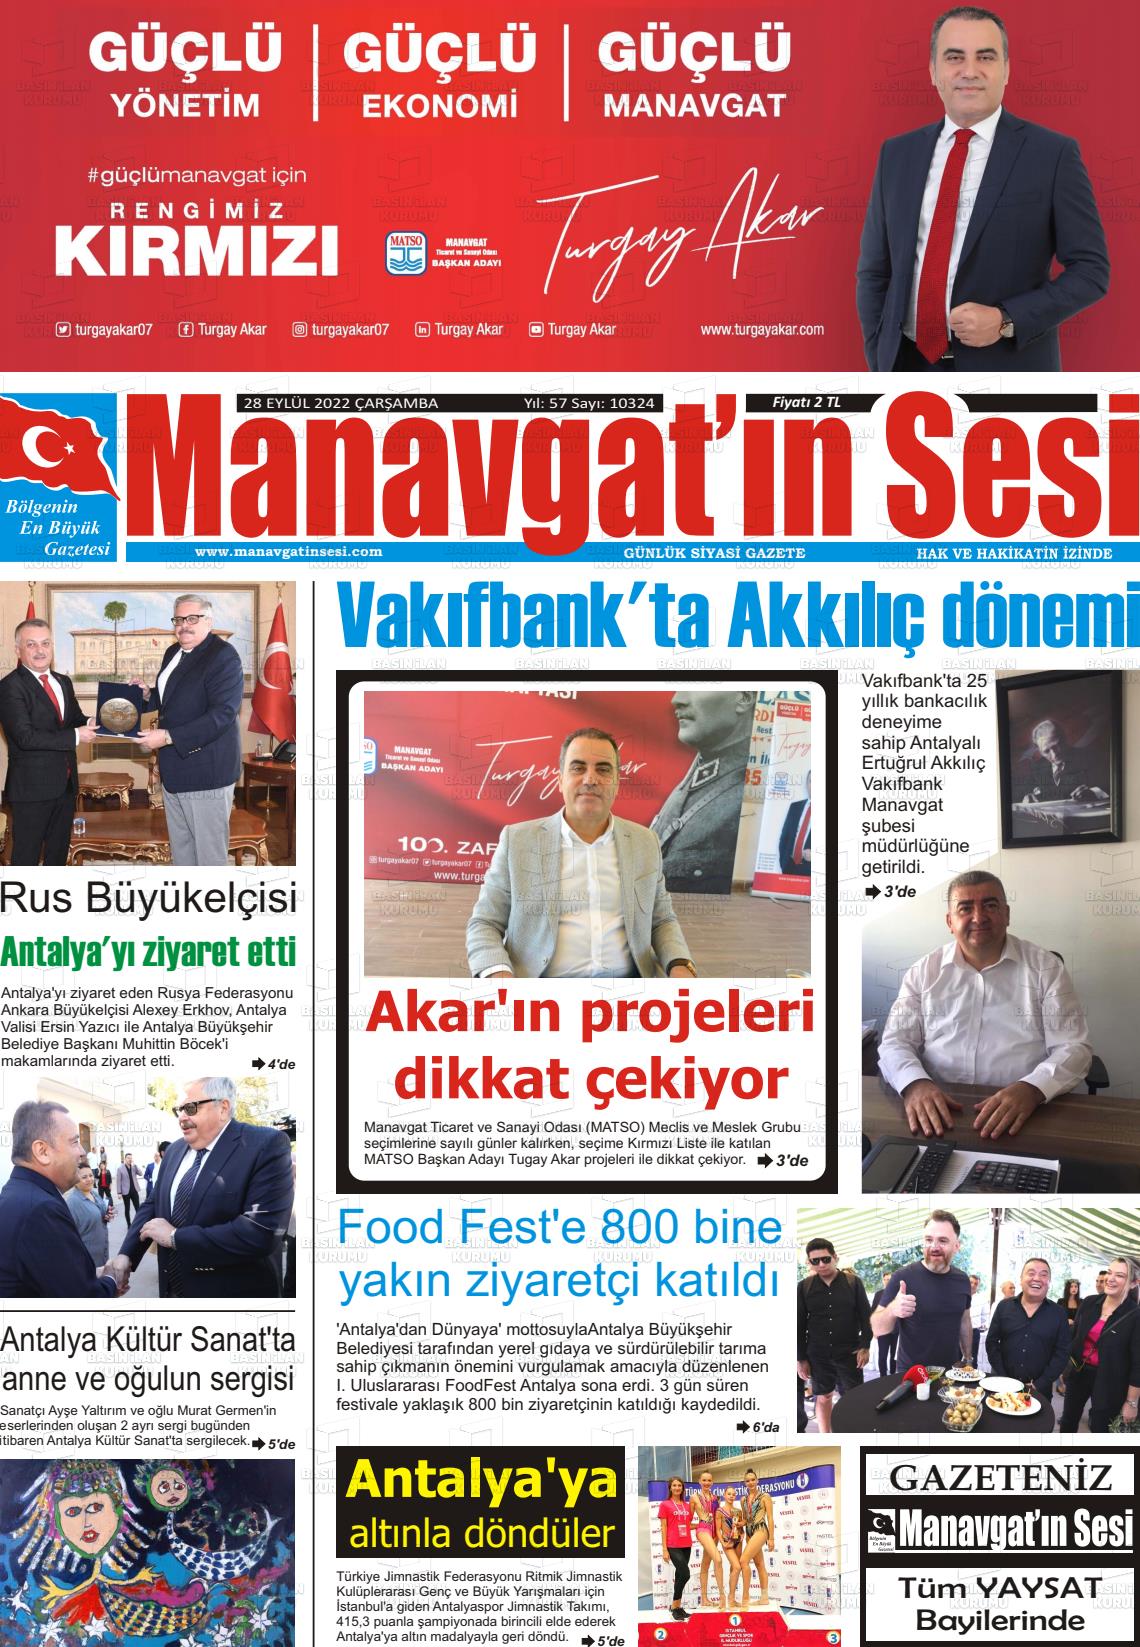 28 Eylül 2022 Manavgat'ın Sesi Gazete Manşeti